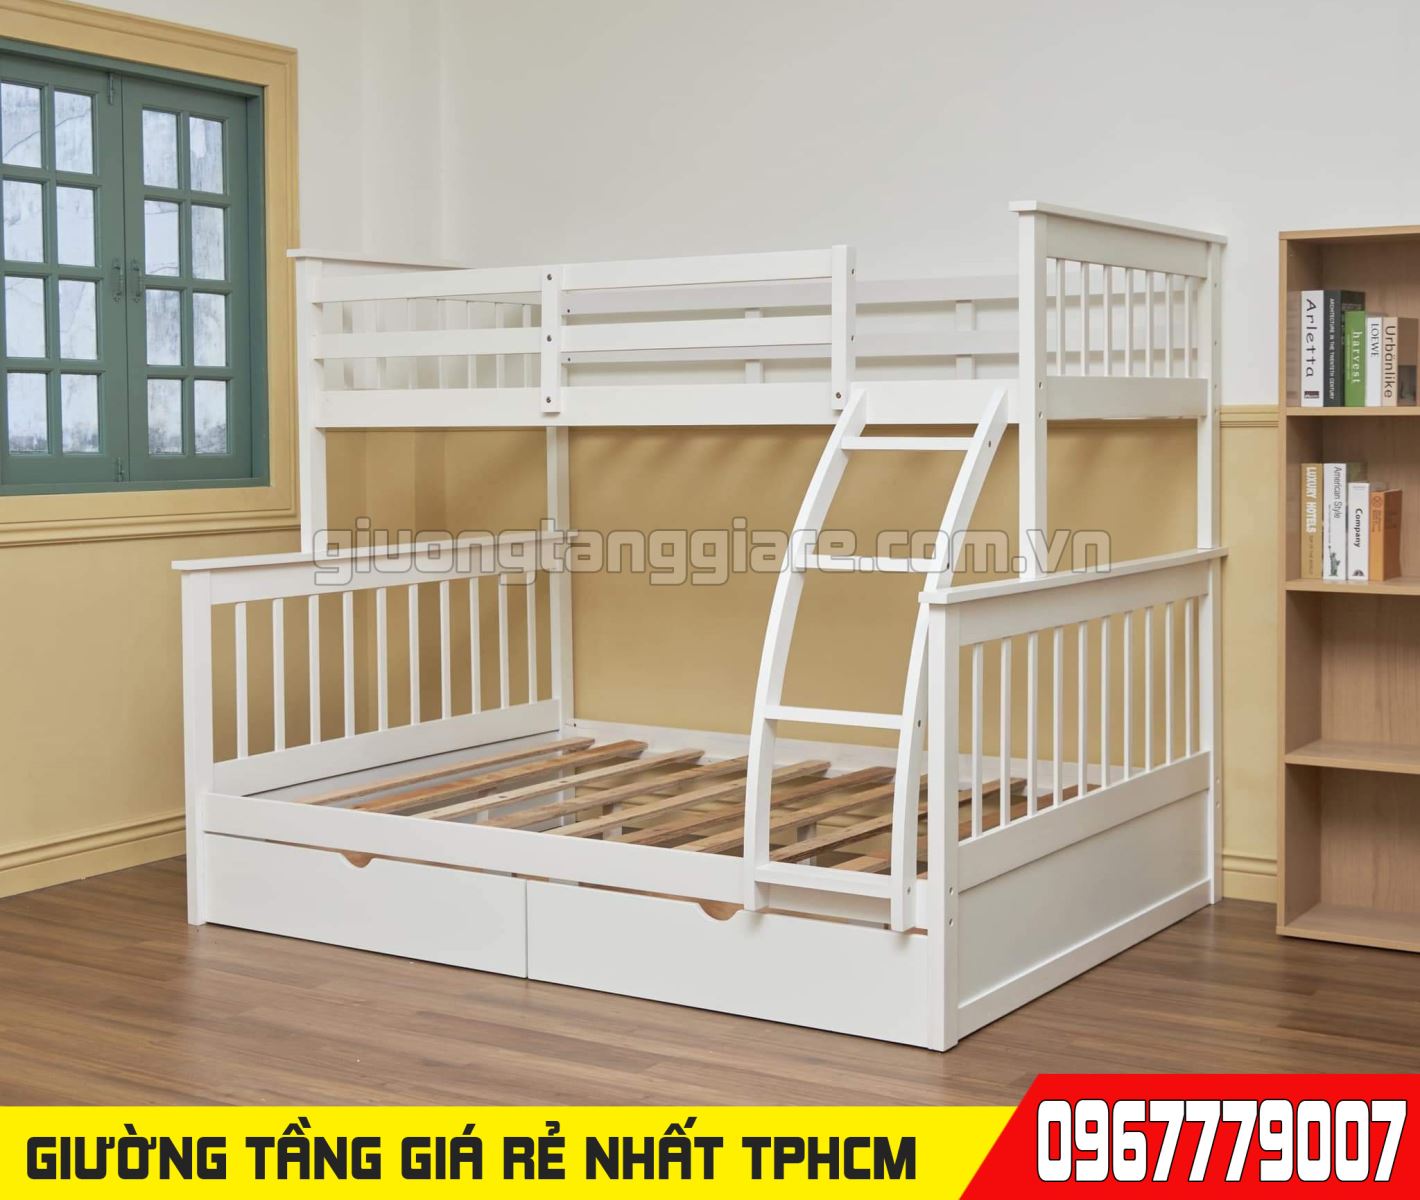 CH bán giường tầng trẻ em giá rẻ uy tín nhất Quận Gò Vấp TPHCM 31